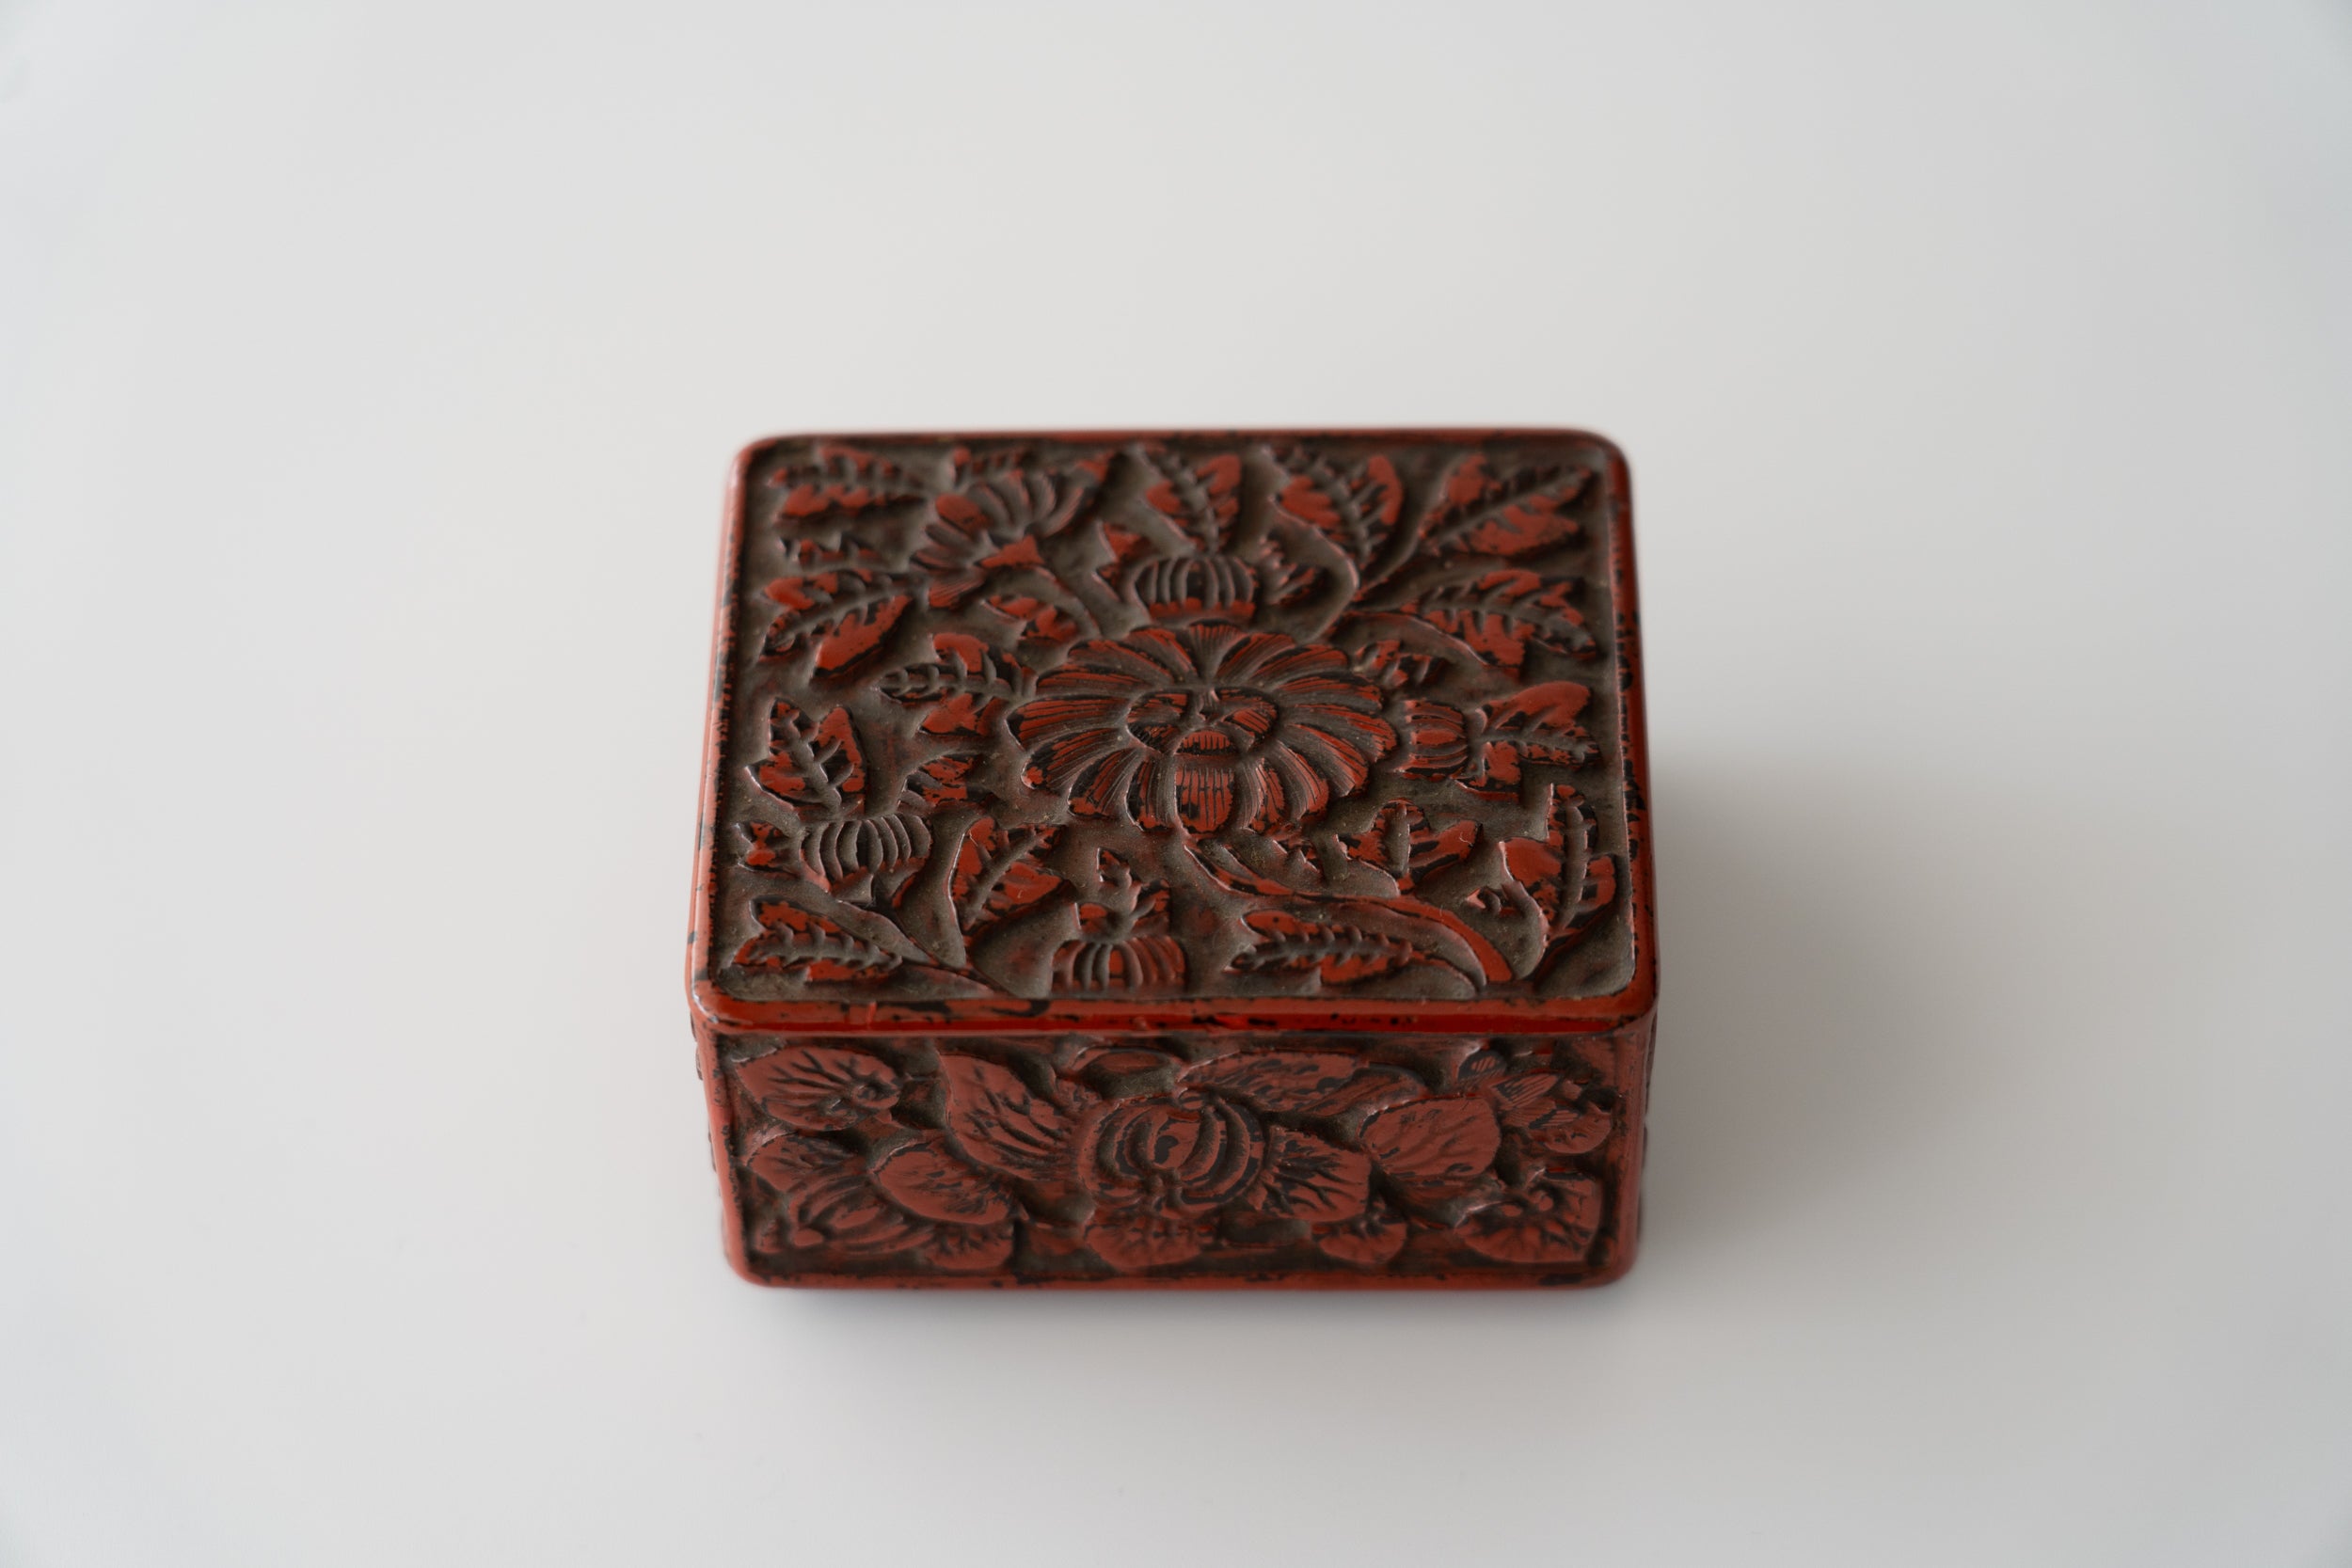 Kamakura-bori incense box with Narcissus and Chrysanthemum design